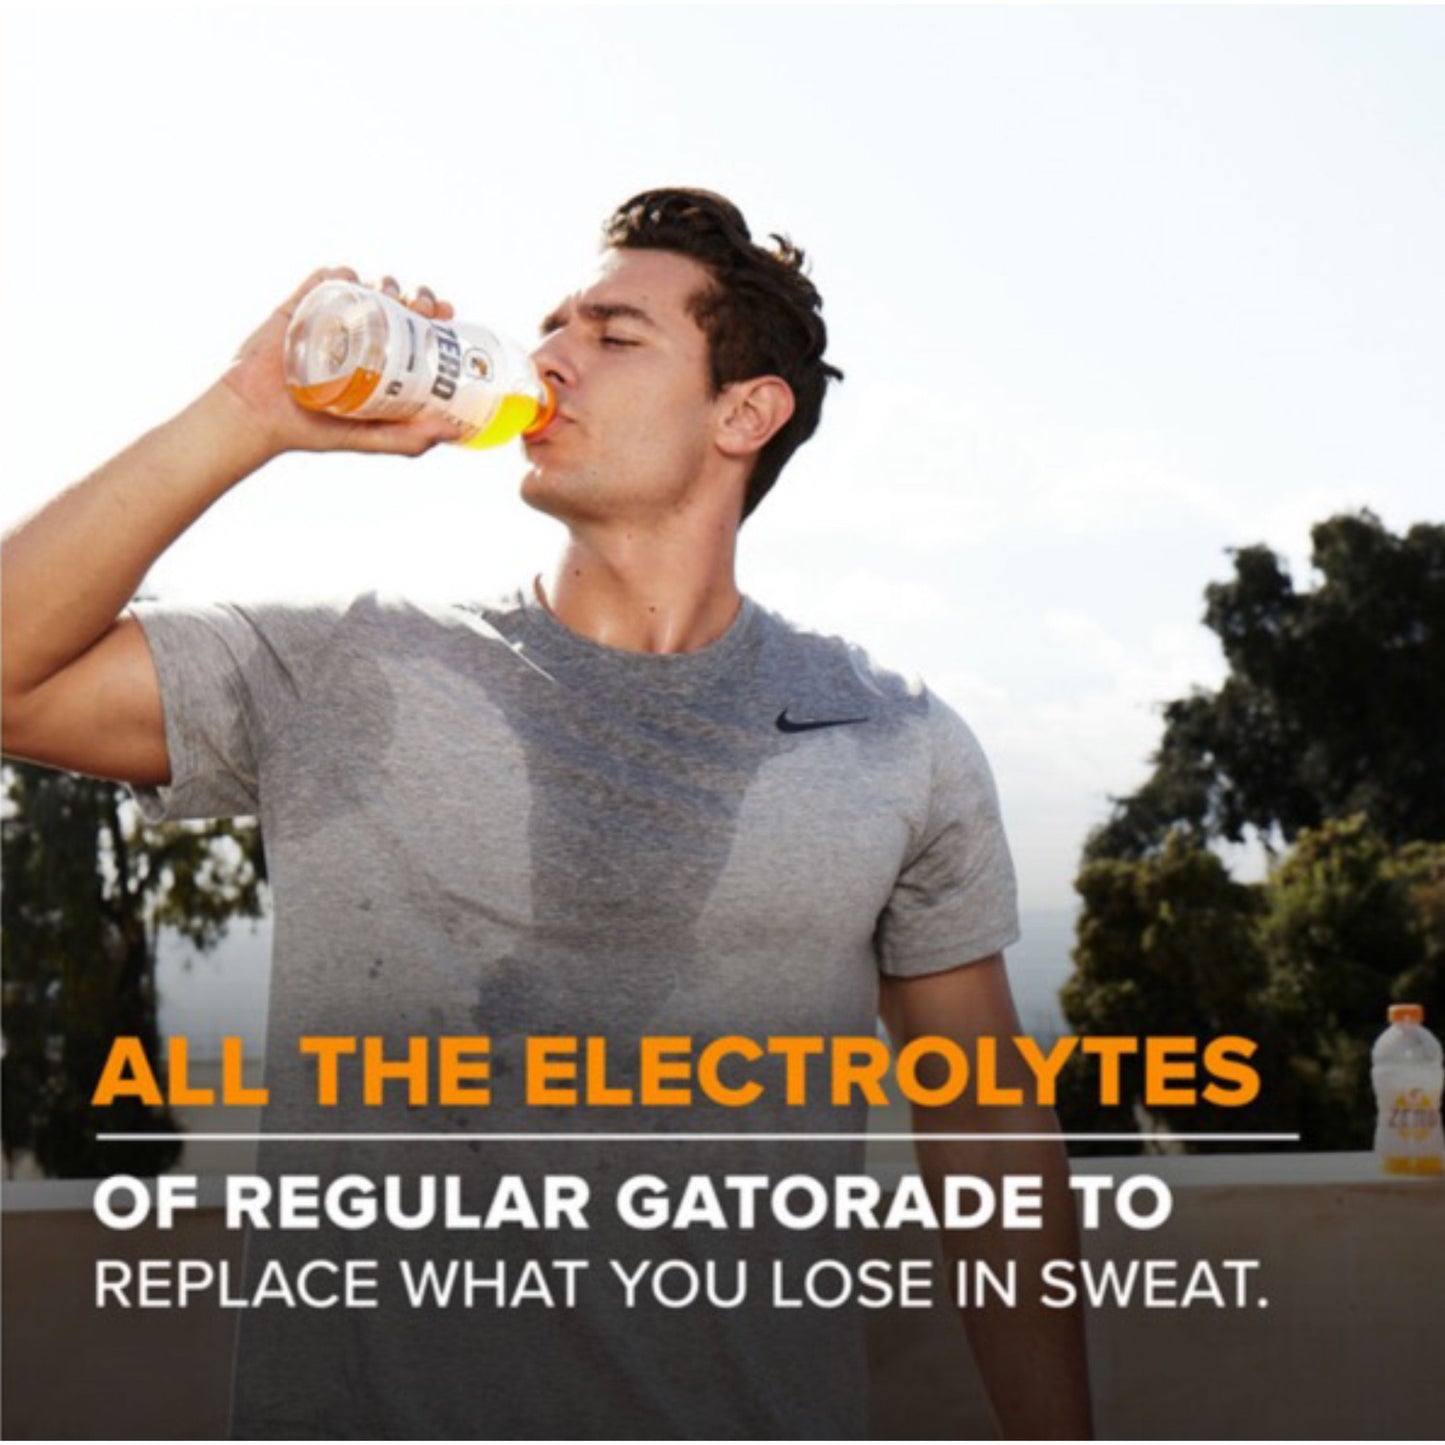 Gatorade G Zero Sugar Orange Thirst Quencher Sports Drink, 12 oz, 12 Pack Bottles